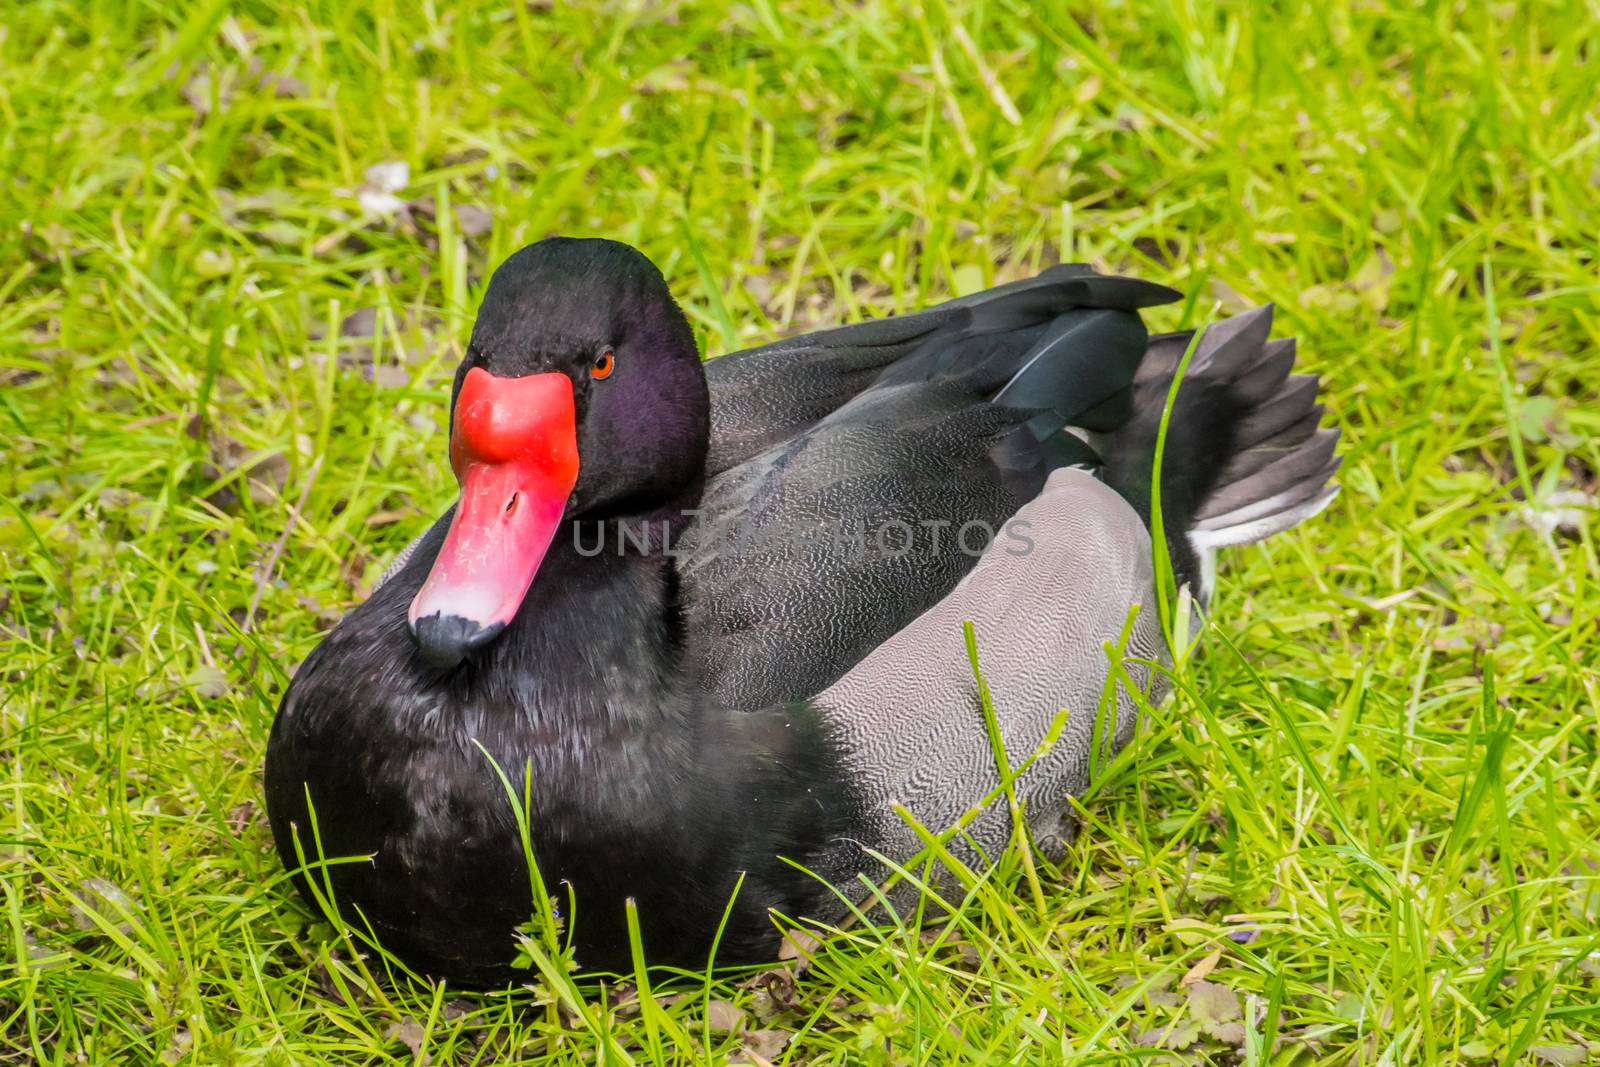 Red beak of black duck with orange eyes